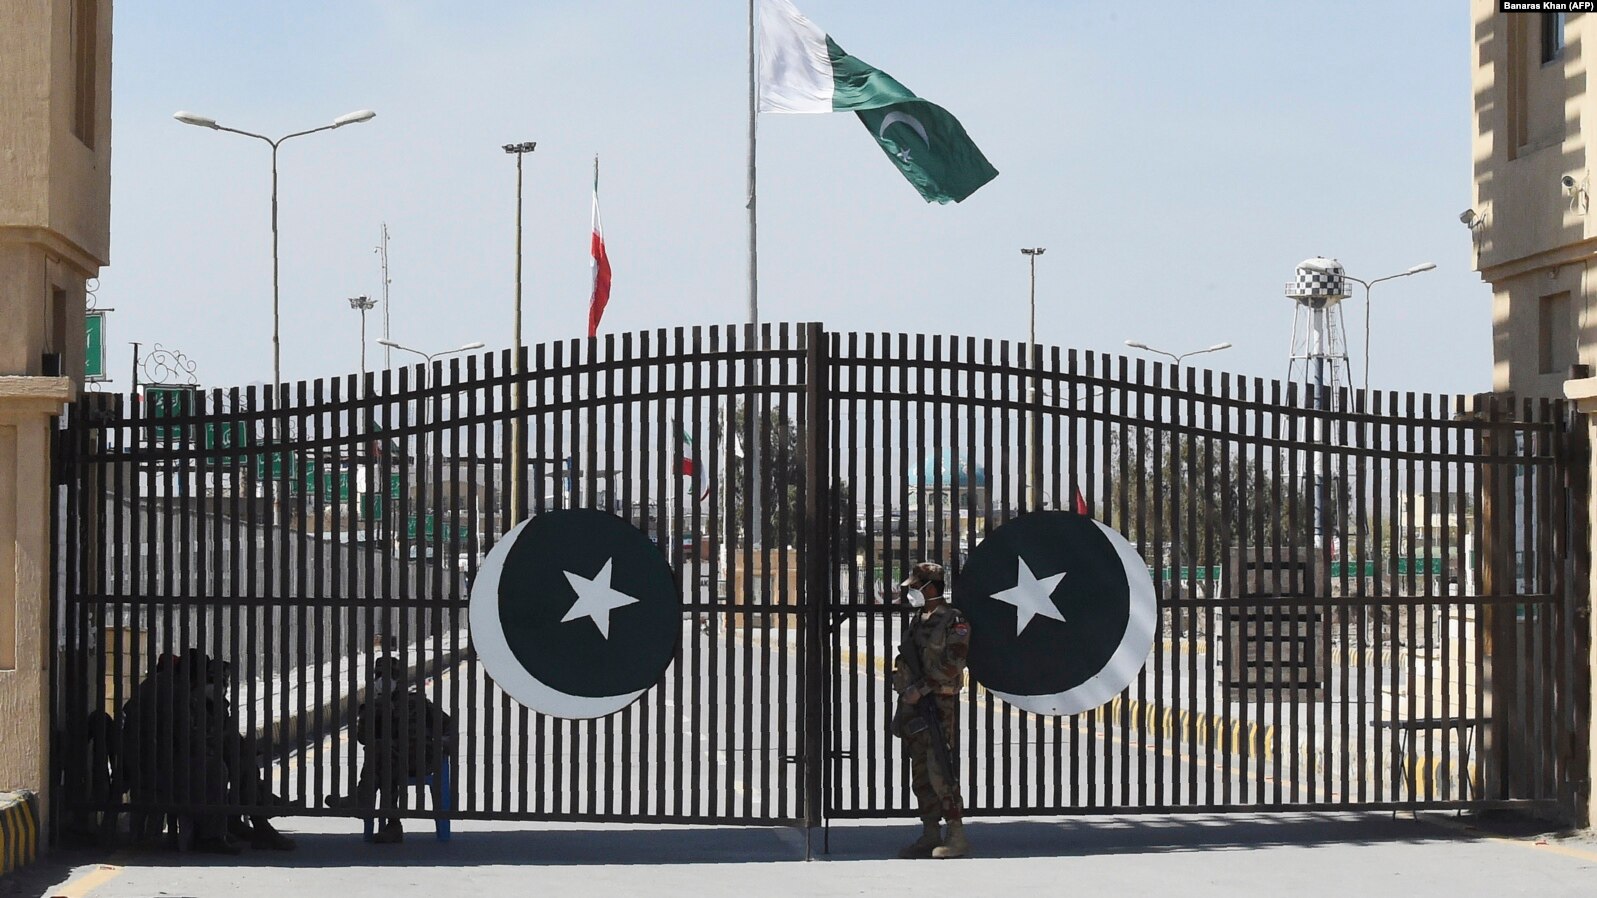 Ushtarët pakistanezë duke bërë roje pranë kufirit të mbyllur mes Pakistanit dhe Iranit. Shkurt, 2020.